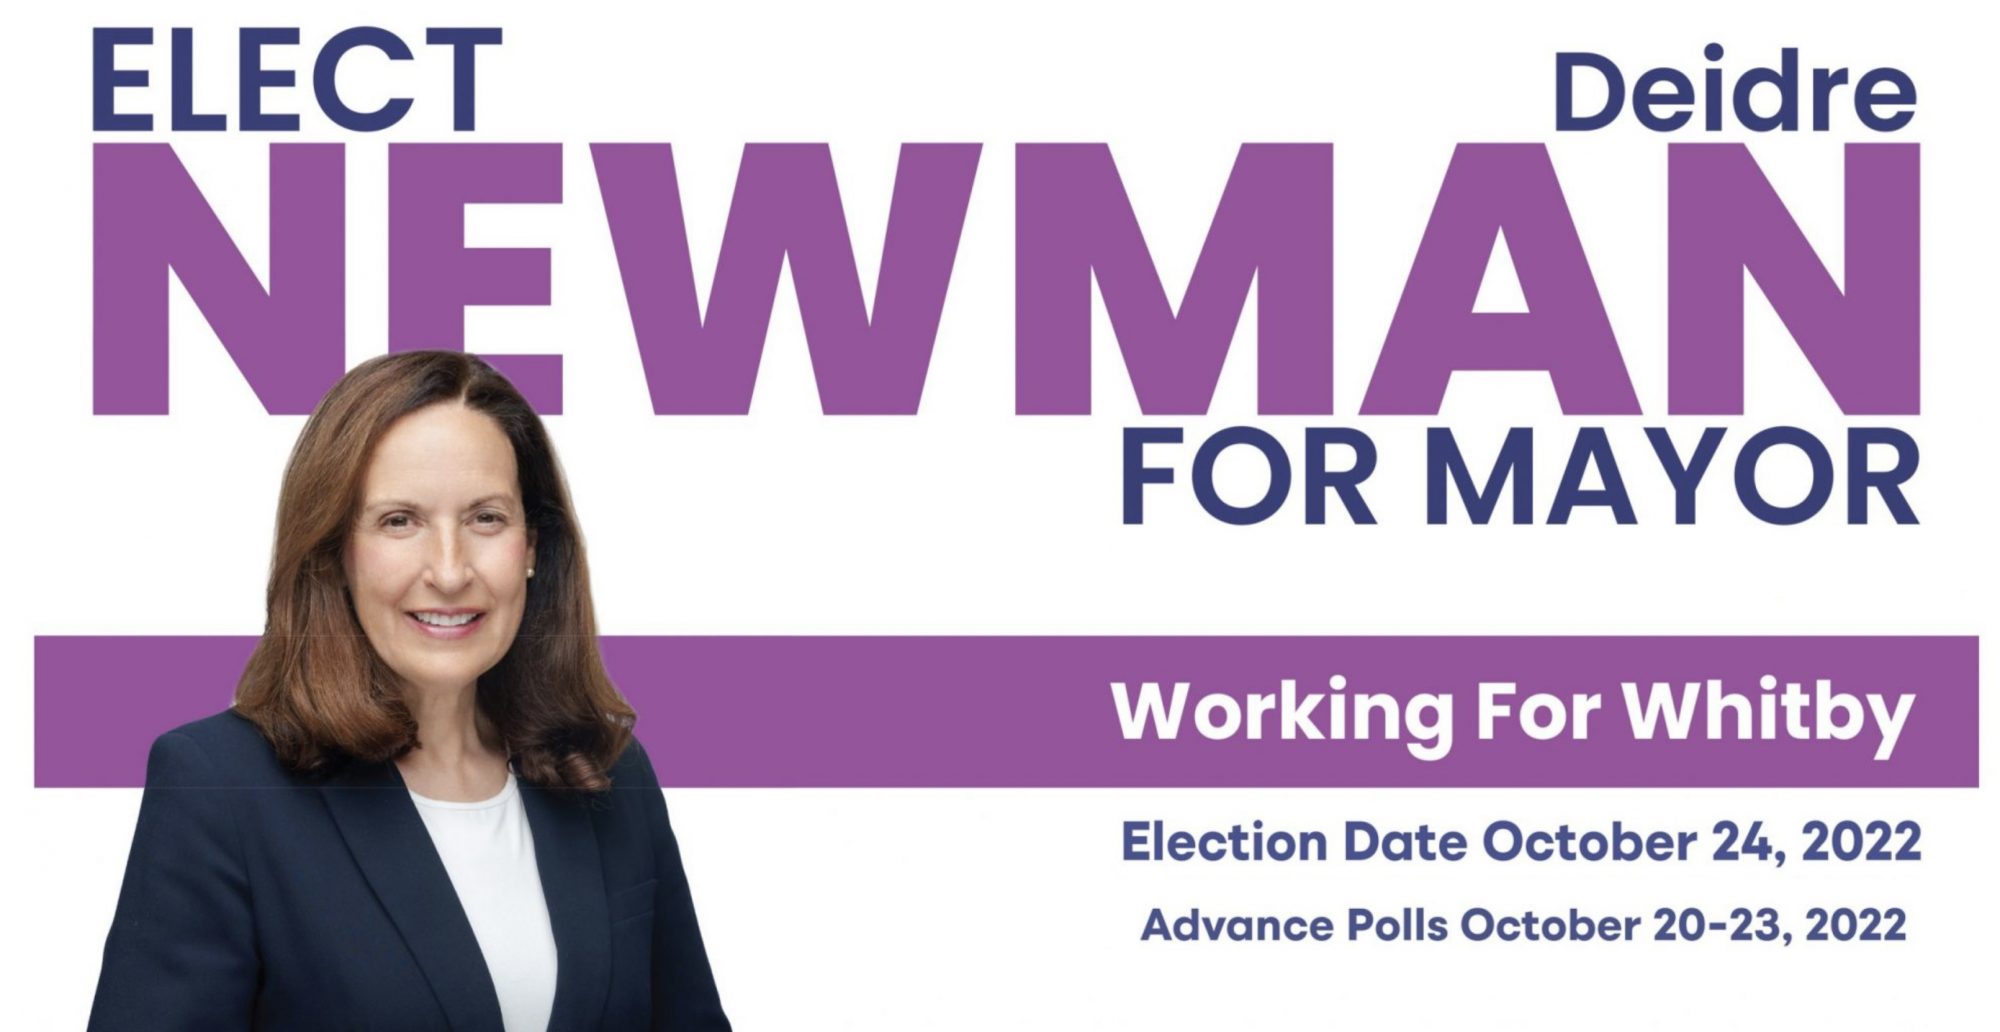 Vote Deidre Newman for Mayor of Whitby